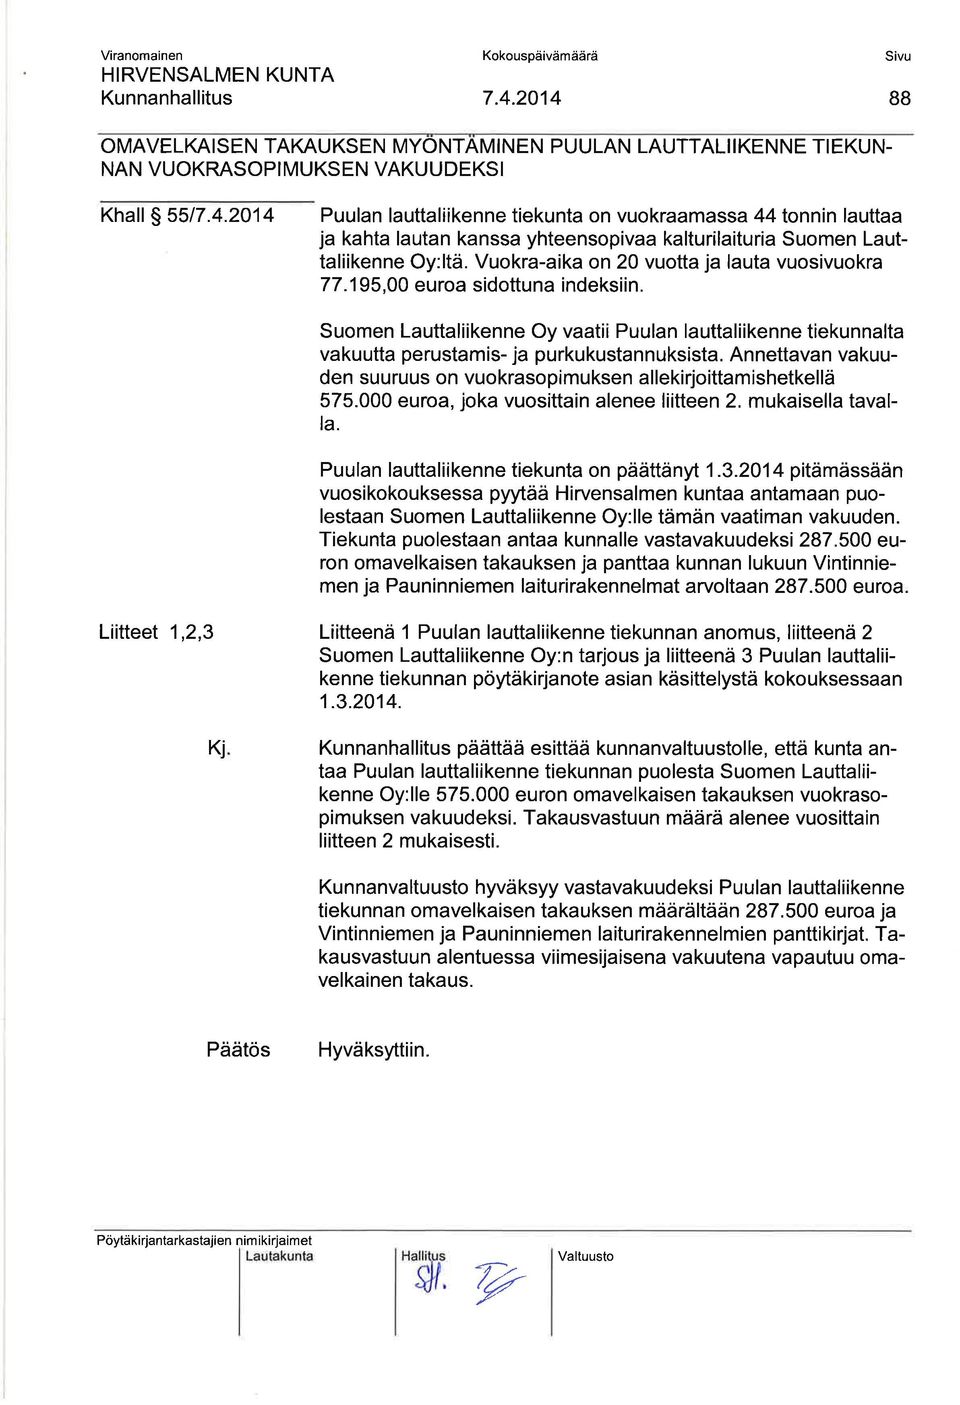 Suomen Lauttaliikenne Oy vaatii Puulan lauttaliikenne tiekunnalta vakuutta perustamis- ja purkukustannuksista. Annettavan vakuuden suuruus on vuokrasopimuksen allekirjoittamishetkellä 575.